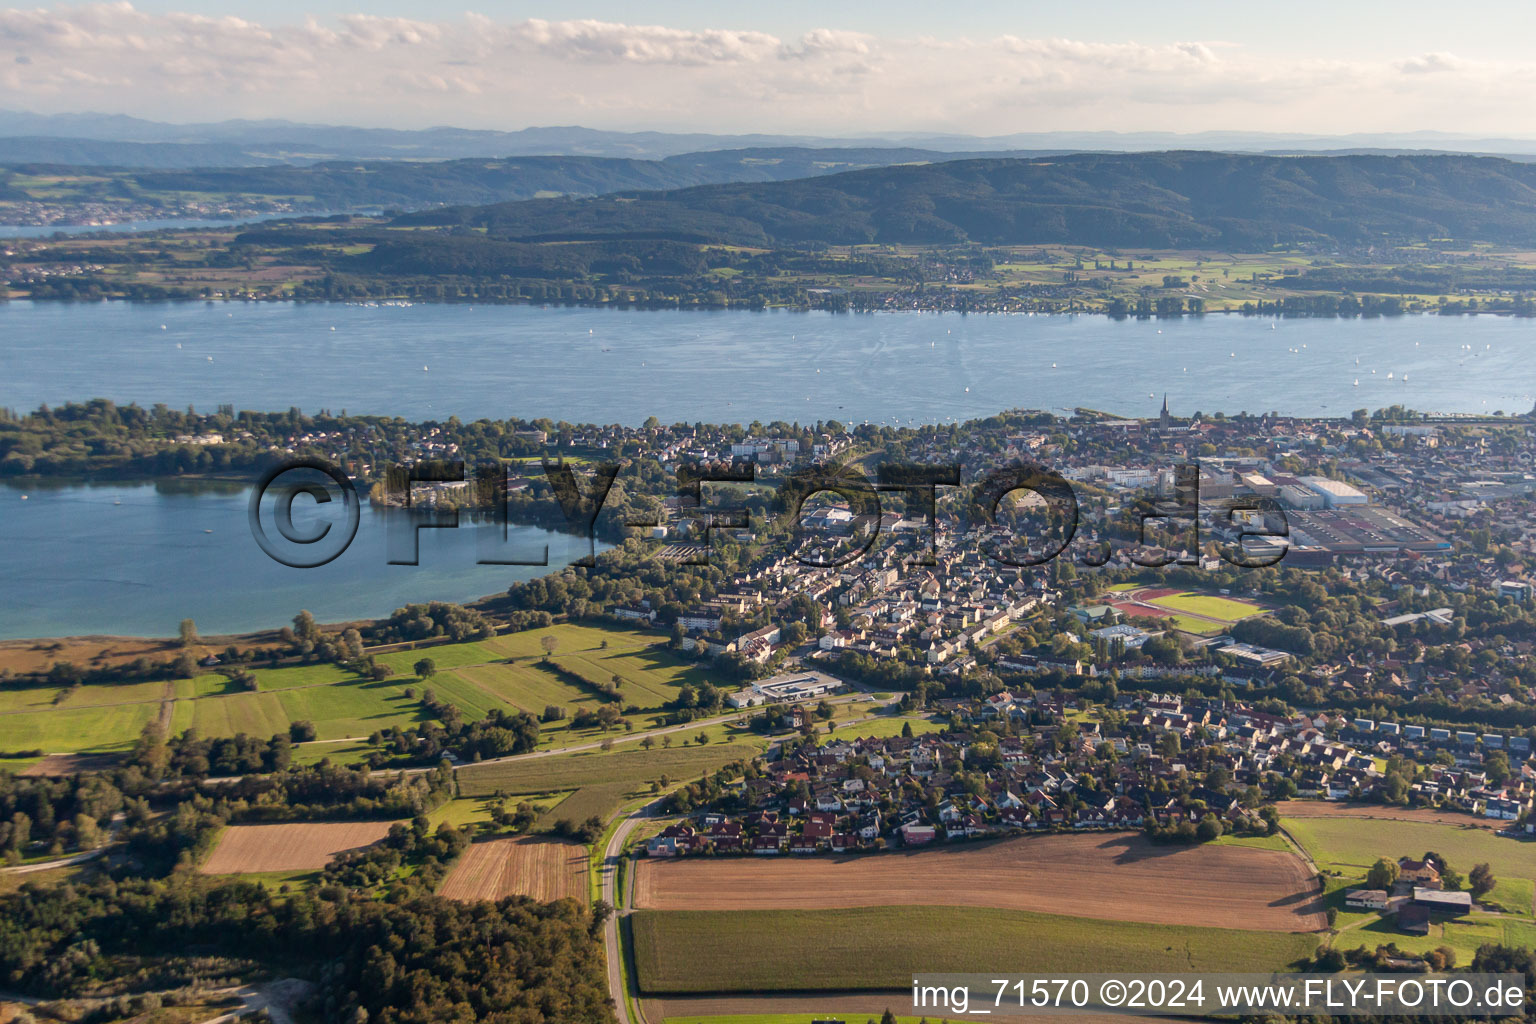 Luftbild von Uferbereich des Bodensee in Radolfzell am Bodensee im Bundesland Baden-Württemberg, Deutschland